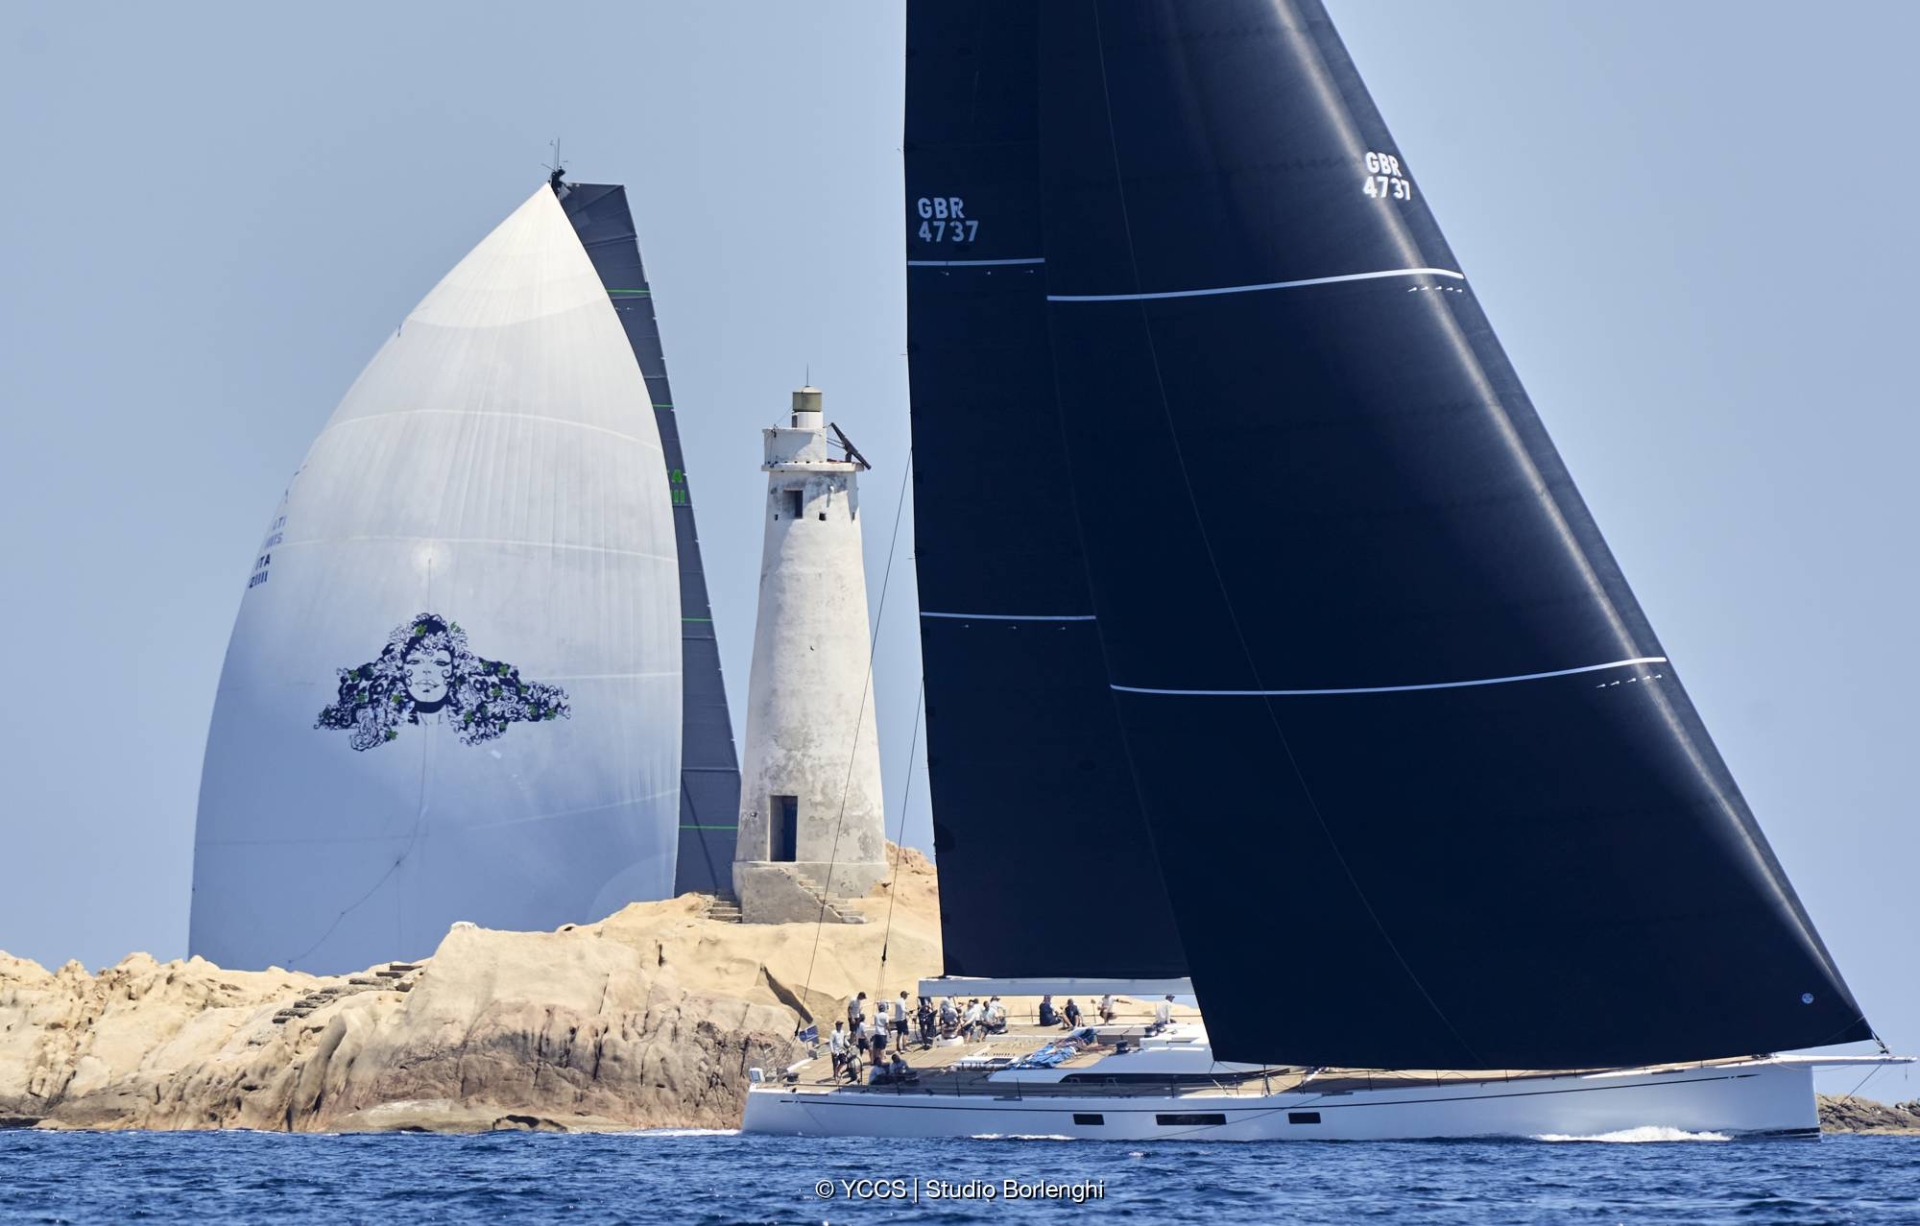 Penultimo giorno alla Giorgio Armani Superyacht Regatta - NEWS - Yacht Club Costa Smeralda